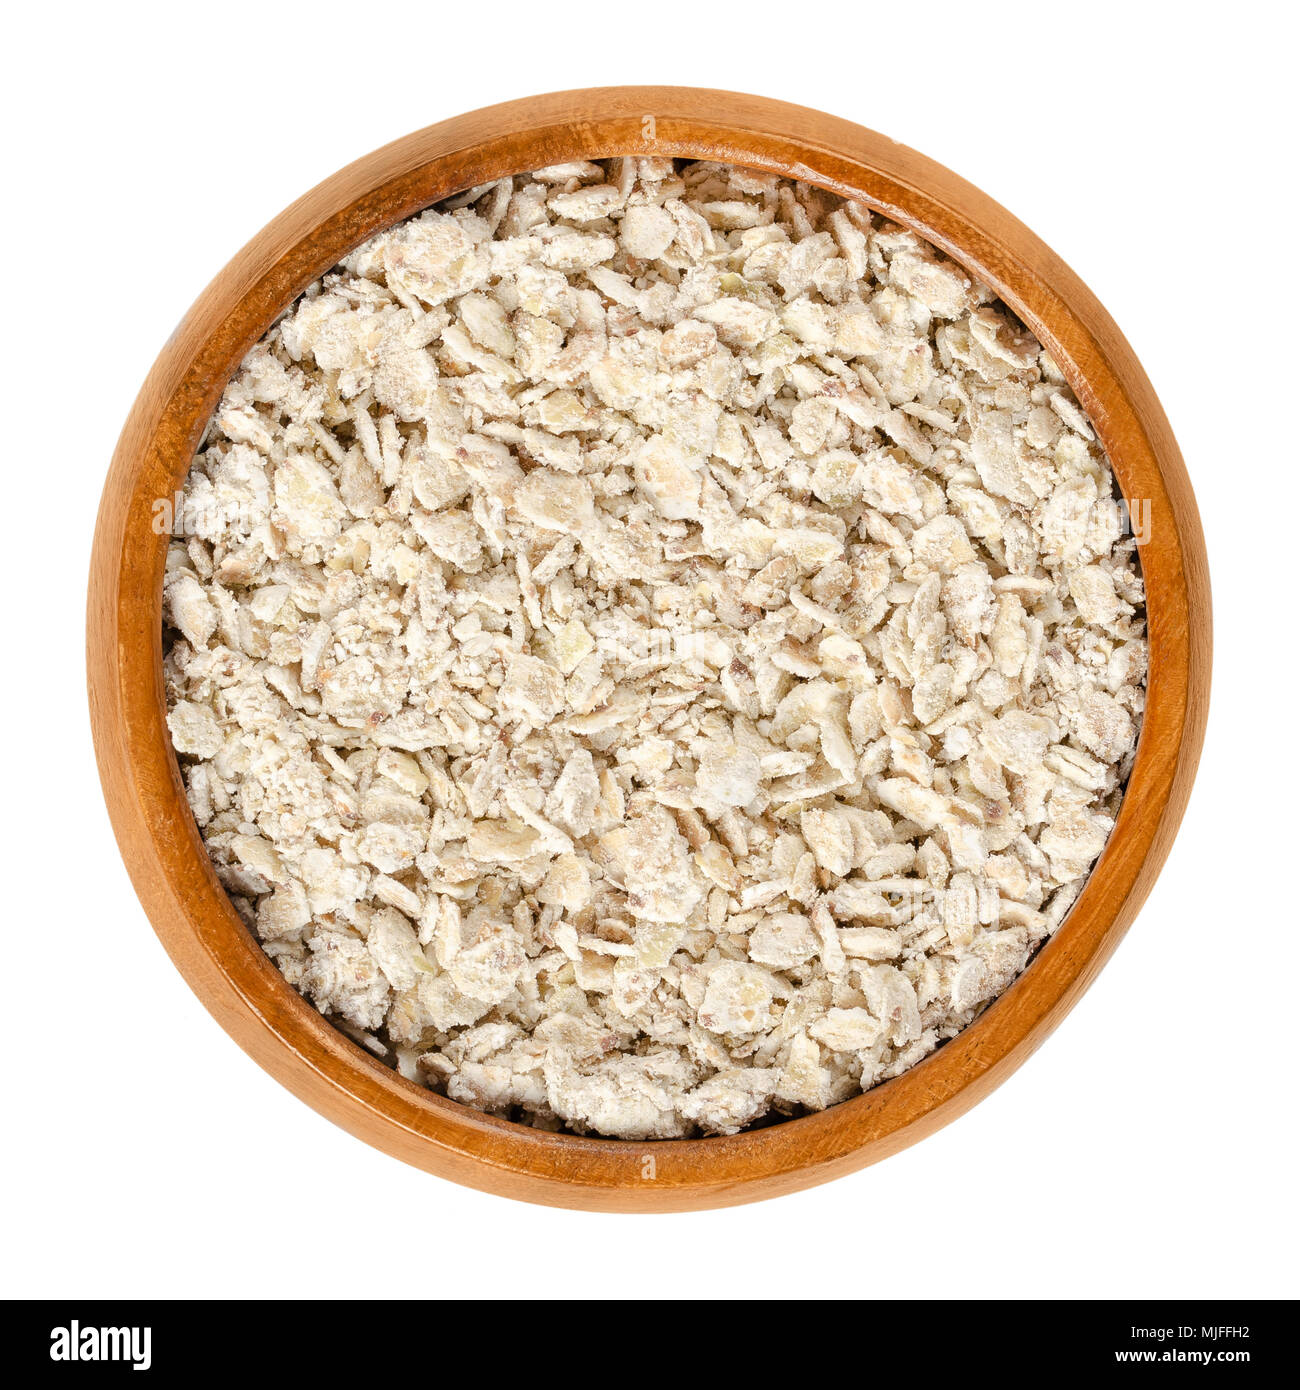 Fiocchi di grano saraceno in ciotola di legno. Laminati grossolana di cereali integrali. Frumento e senza glutine. Commestibili e cibi crudi. Fagopyrum esculentum. Foto Stock